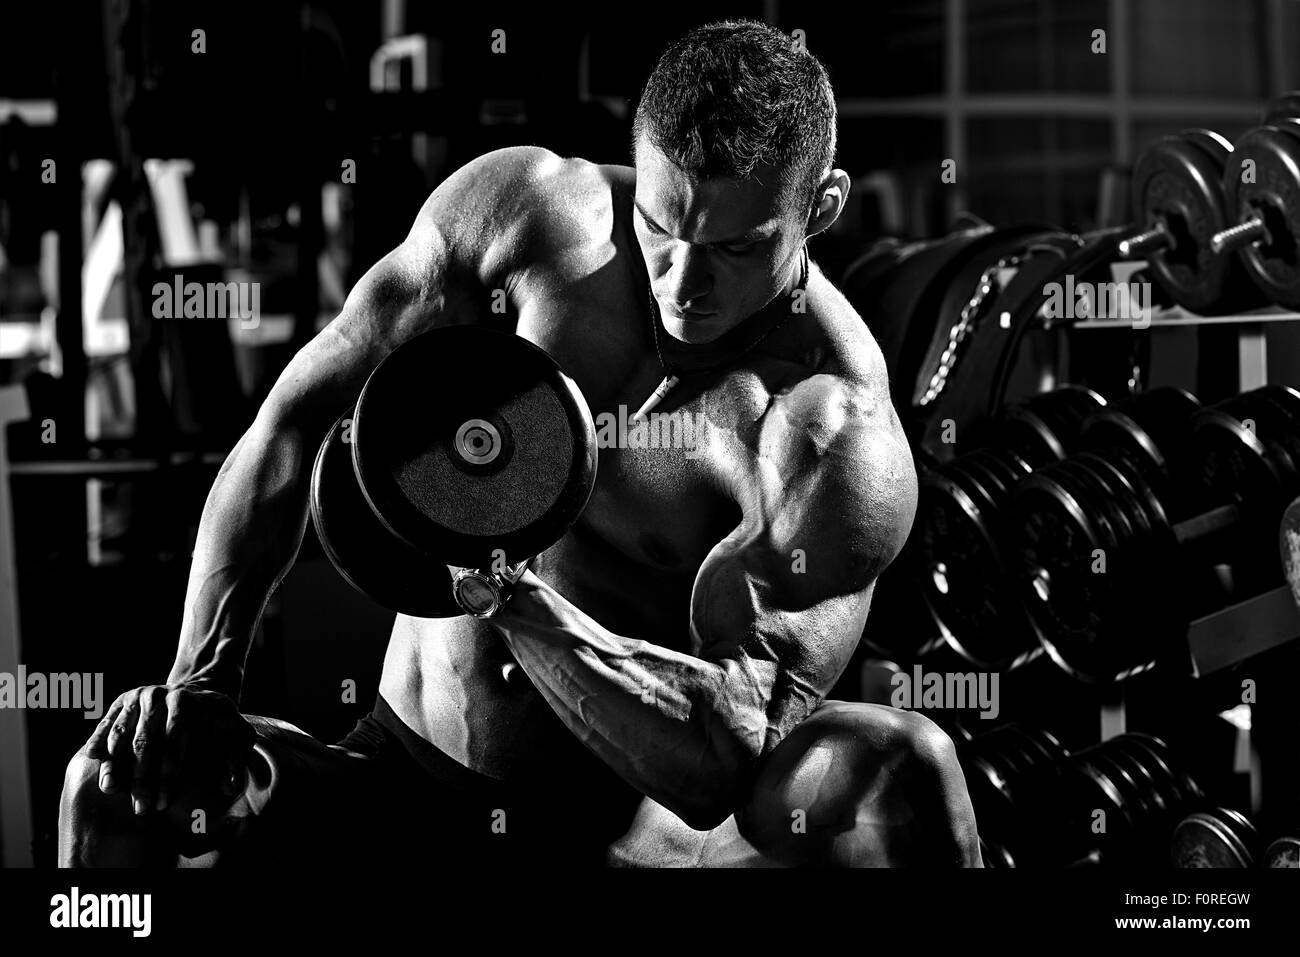 sehr athletischen Kerl Bodybuilder macht, Übung mit Hanteln, in dunklen Turnhalle, schwarz / weiß Foto ausführen Stockfoto